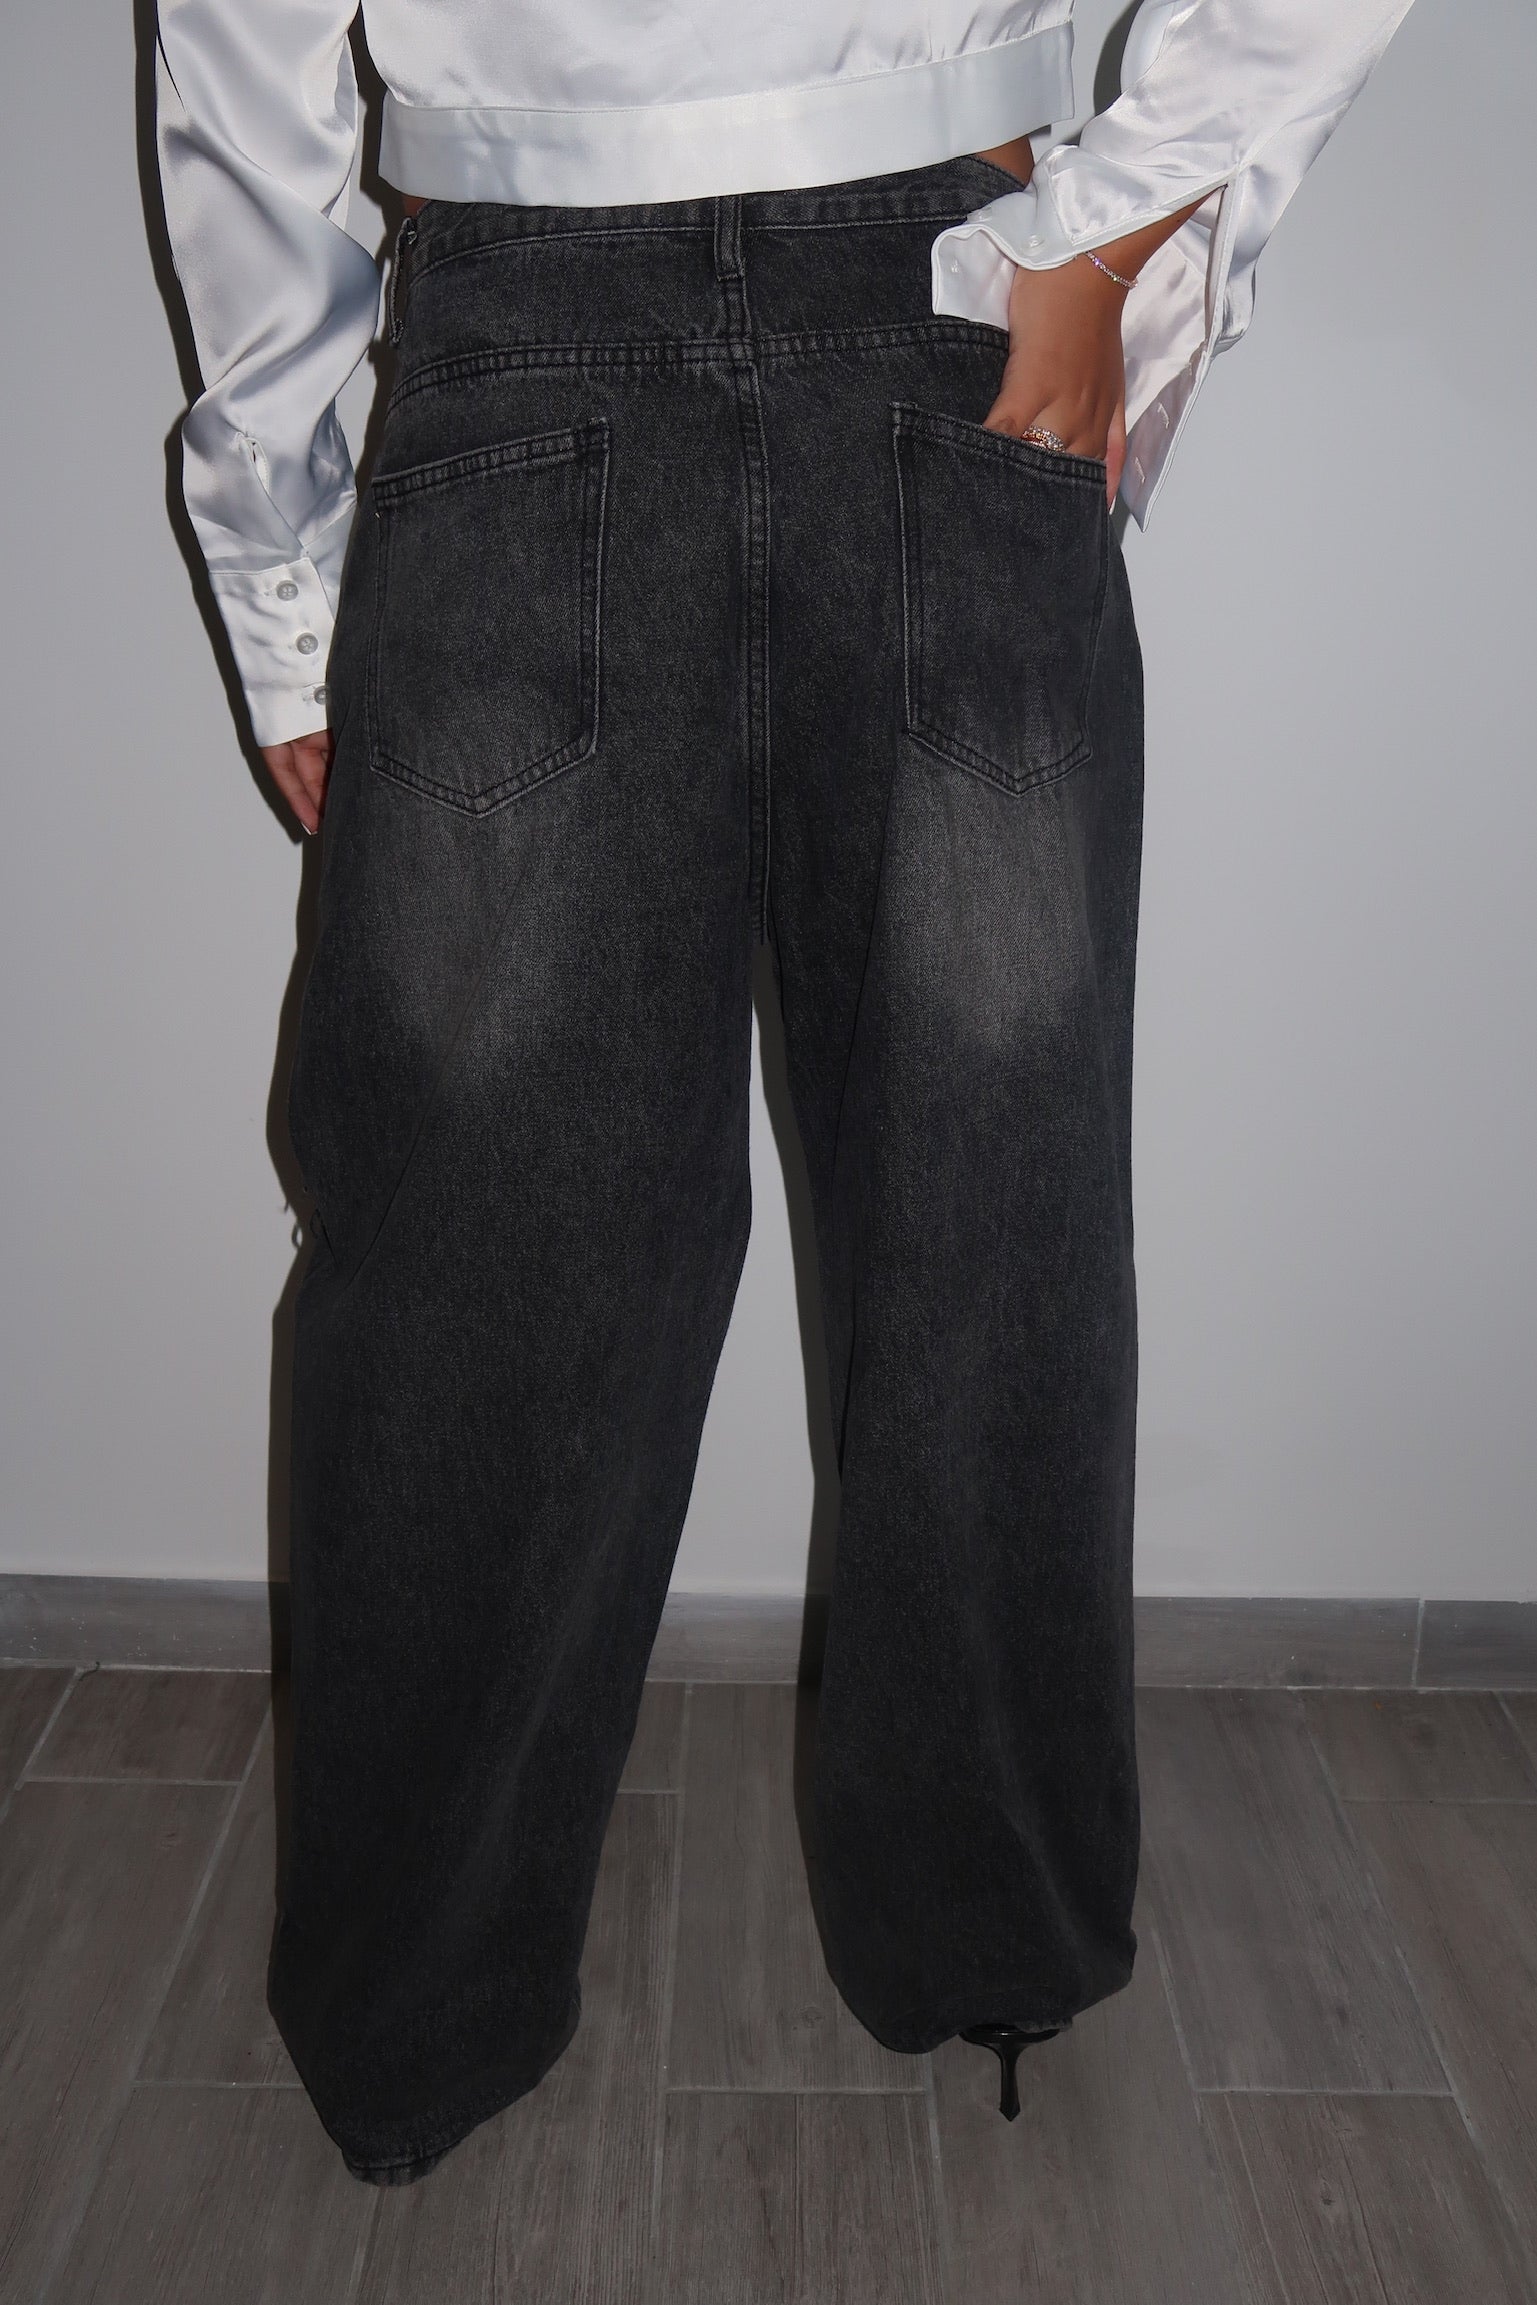 מכנס ג׳ינס ליהי אפור